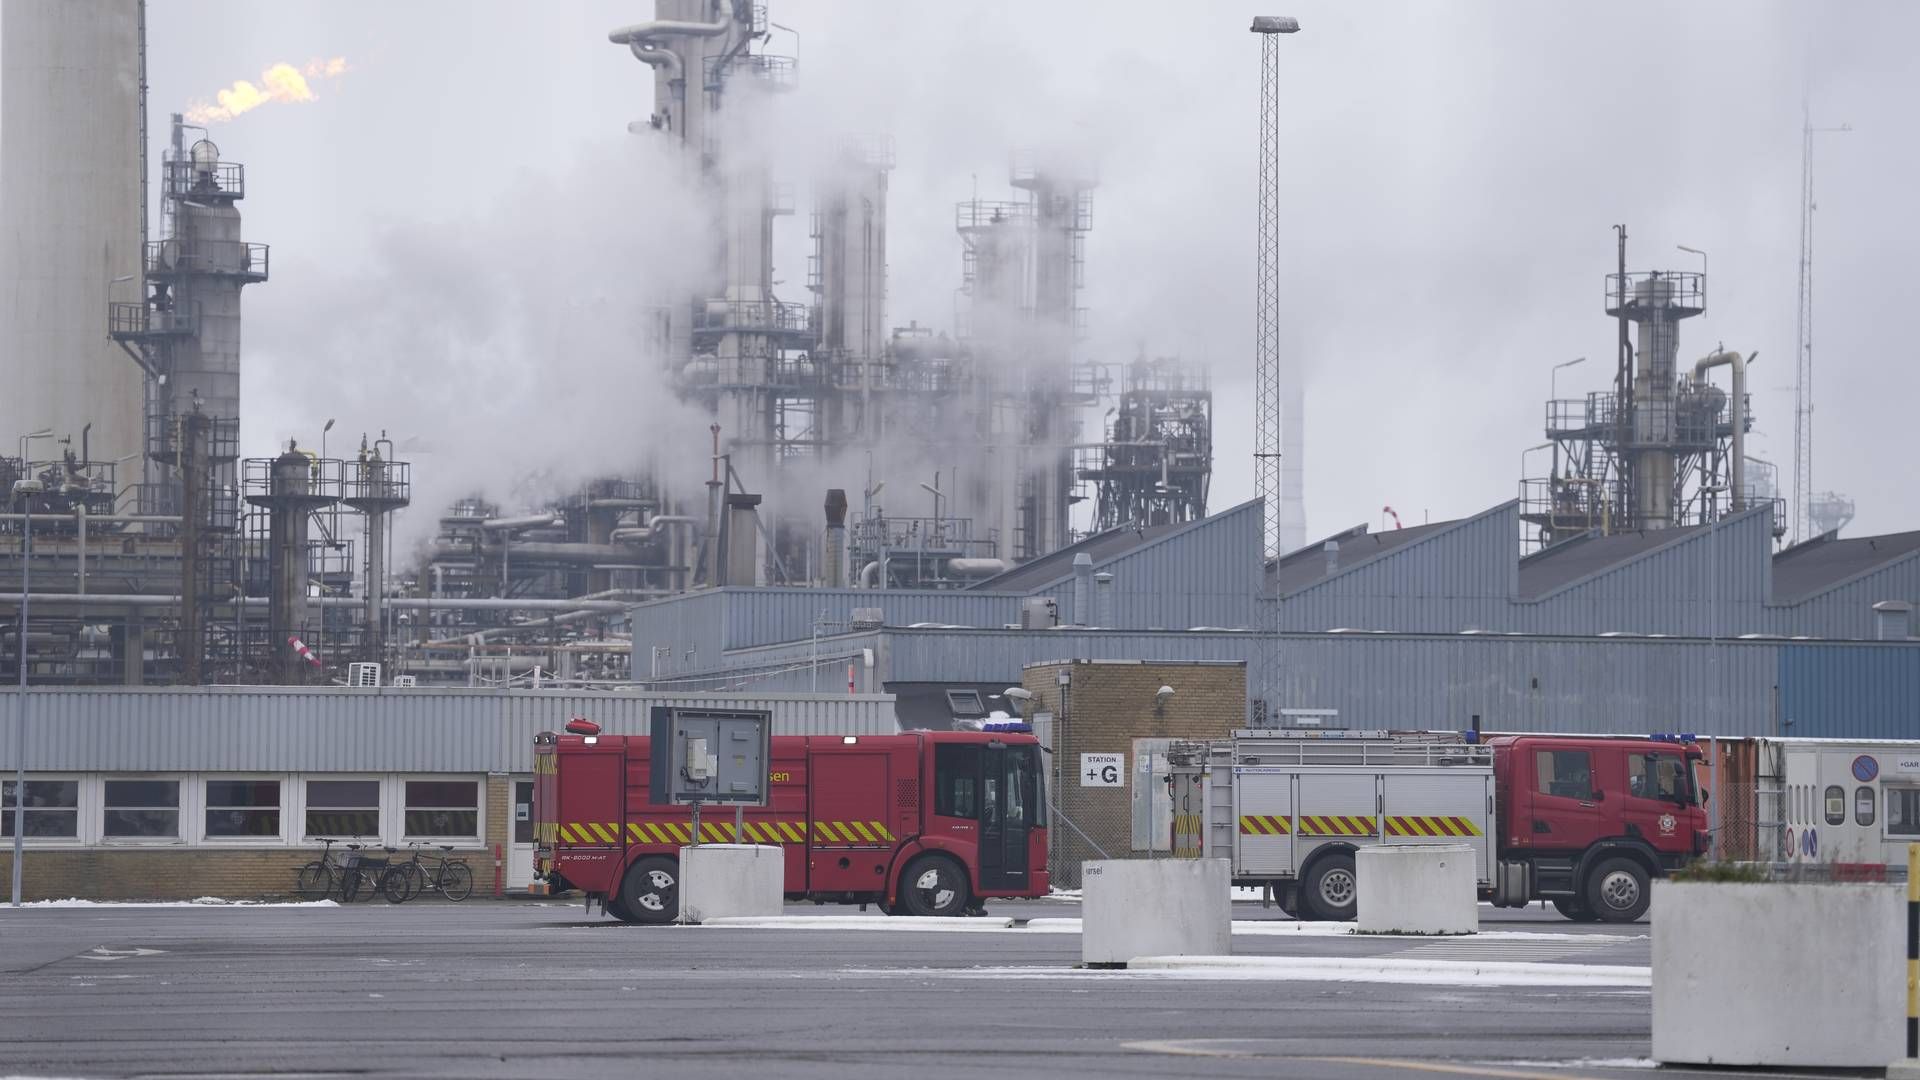 Brandvæsnet er lørdag formiddag rykket ud til en brand på olieraffinaderiet Crossbridge Energy i Fredericia. | Foto: Frank Cilius/Ritzau Scanpix